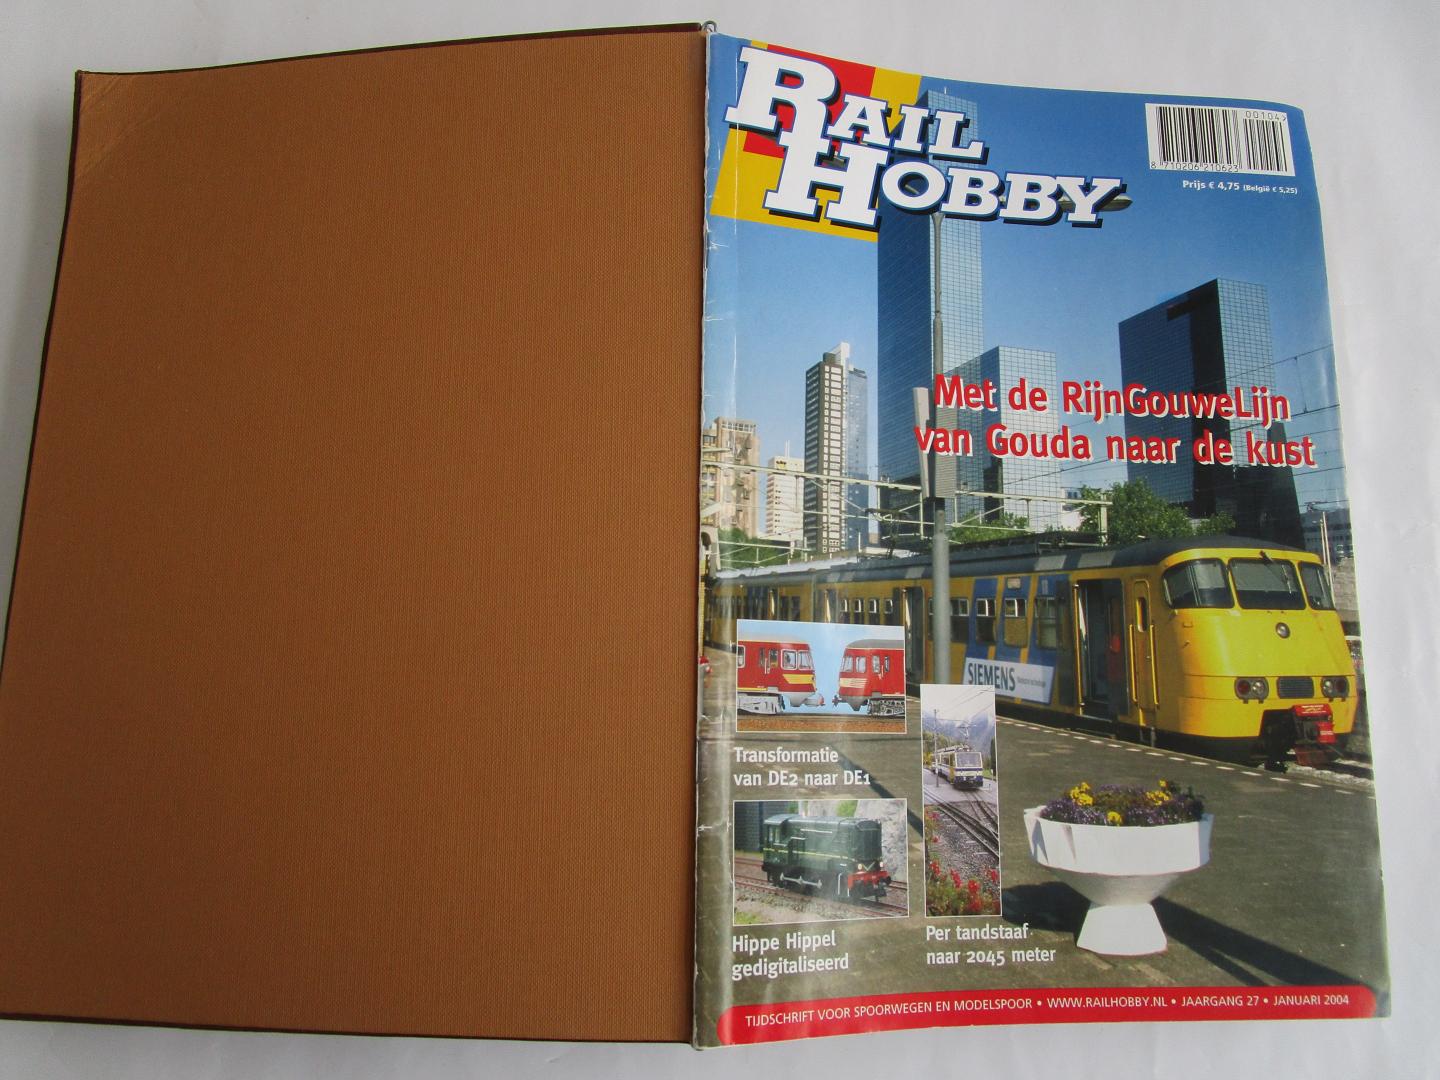 Jong, Ruurd de; ea  (Hoofdredactie) - RAILHOBBY jaargang 2004  - tijdschrift voor spoorweg en modelbouw -